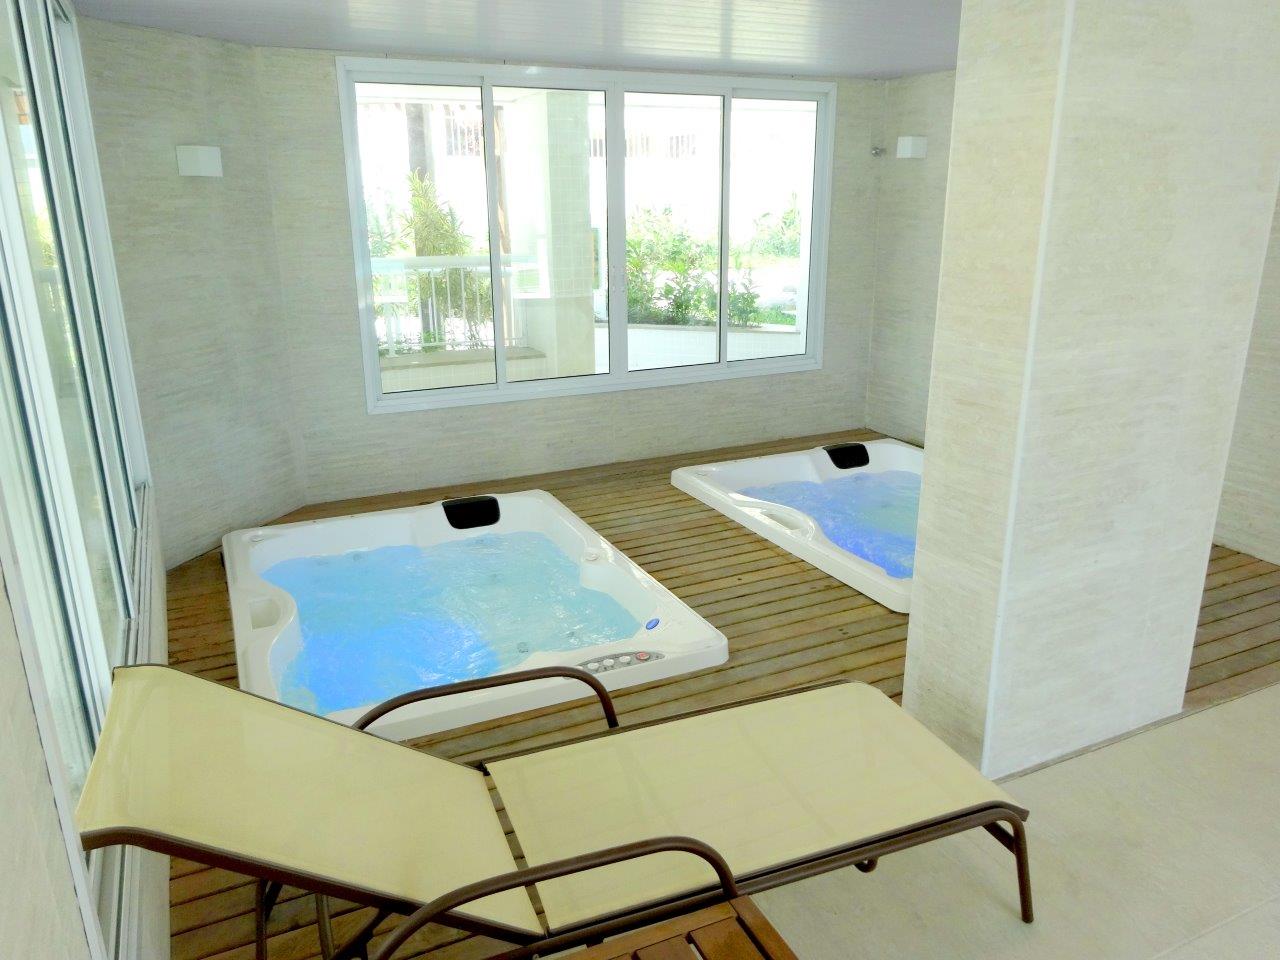 Residencial Bora Bora Tijuca - Condom&#237;nios com Apartamentos de 2 e 3 Dormit&#243;rios, Quartos no Rio de Janeiro, RJ | Construtora Santa Cec&#237;lia